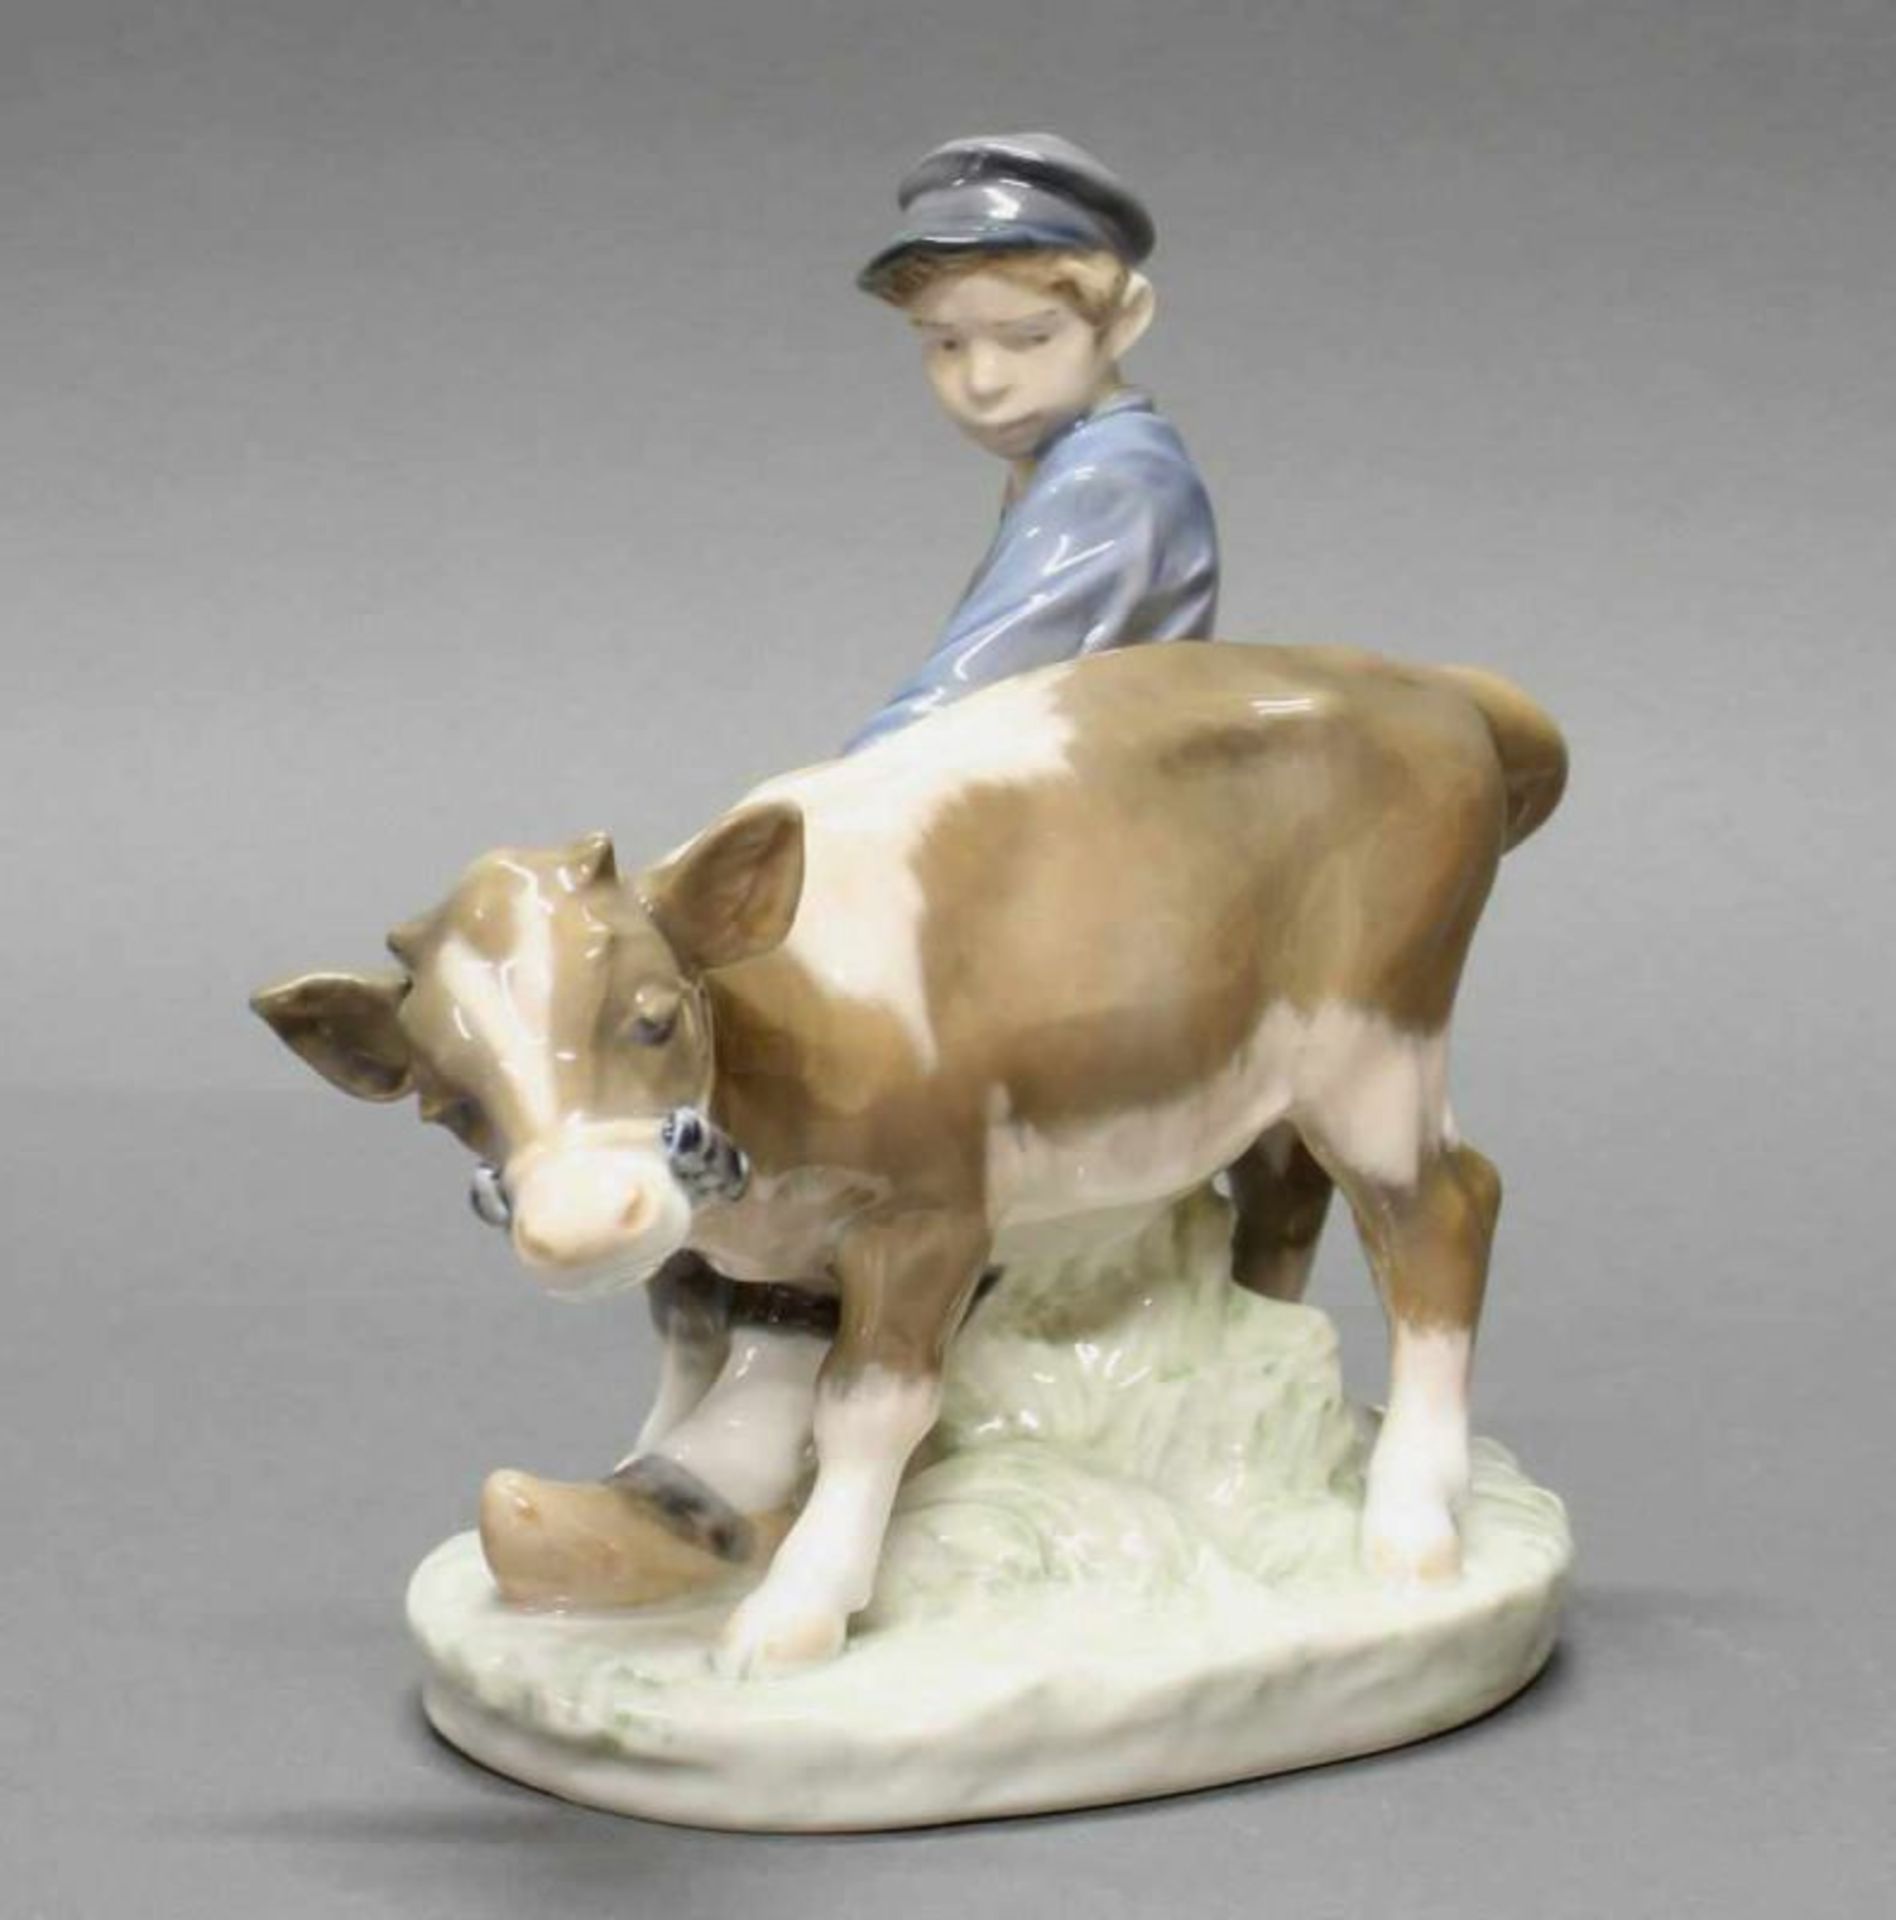 Porzellanfigur, "Junge mit Kalb", Royal Kopenhagen, Modellnummer 772, polychrom, Modellentwurf von - Image 2 of 2